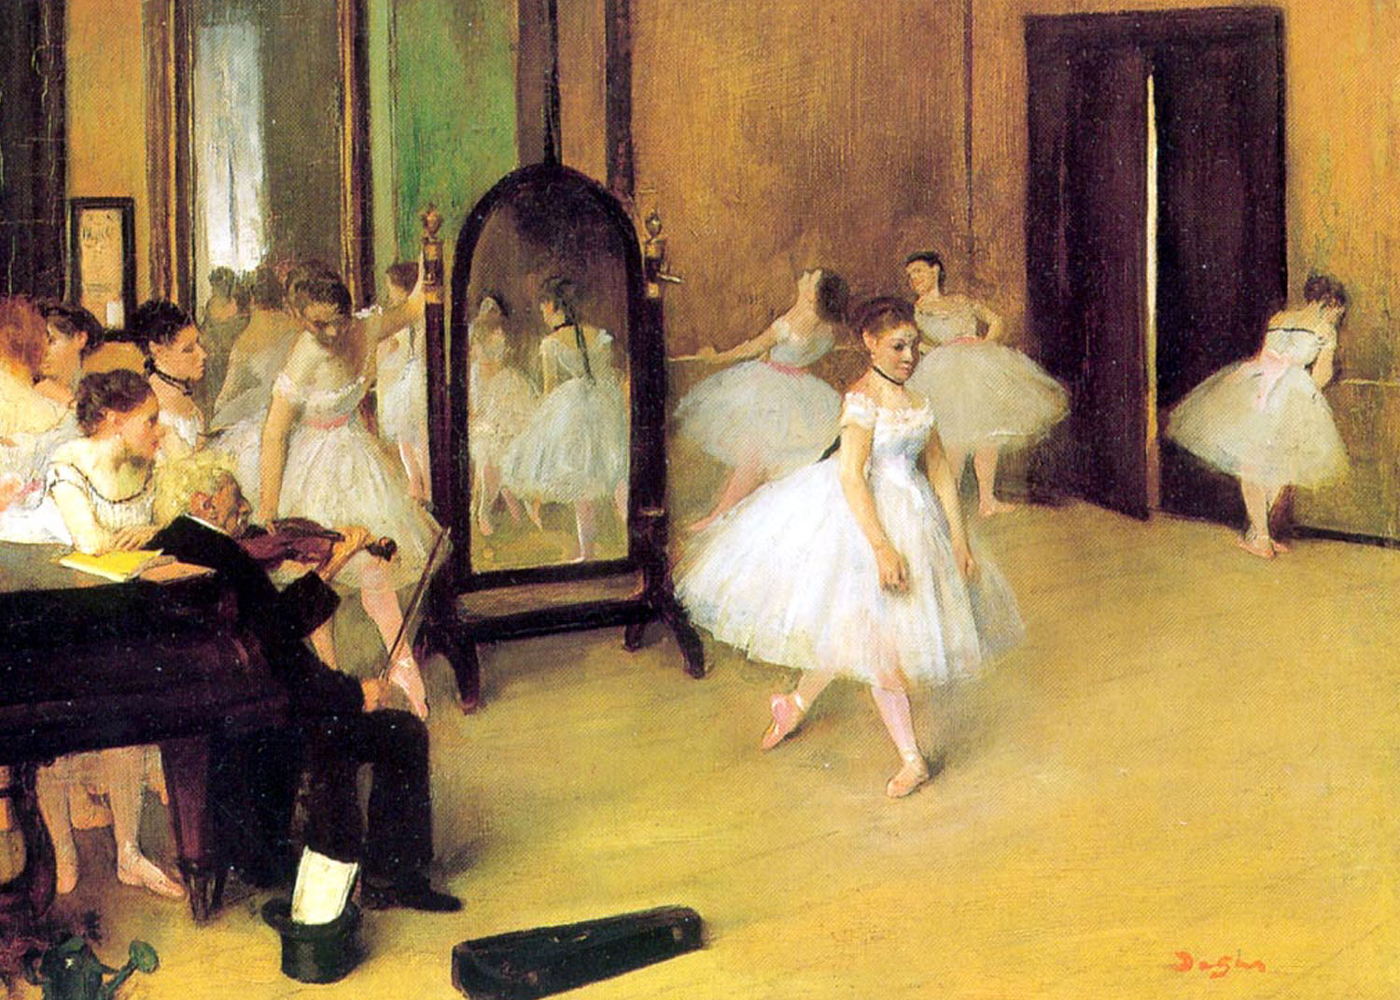 Edgar+Degas-1834-1917 (346).jpg